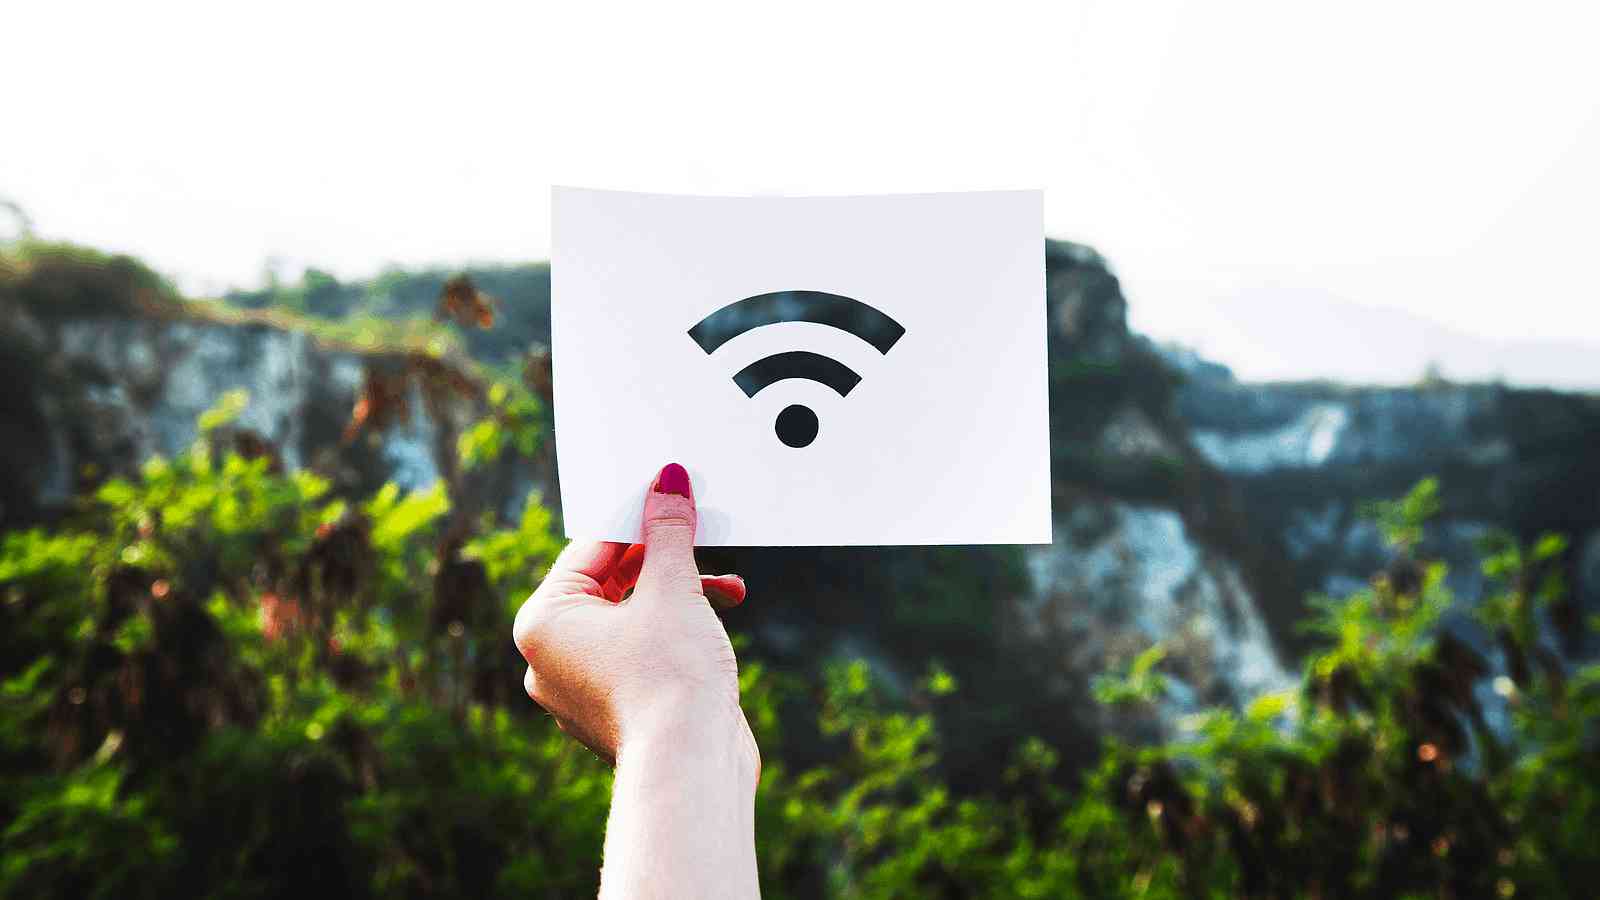 Názvy verzí Wi-Fi konečně dávají smysl